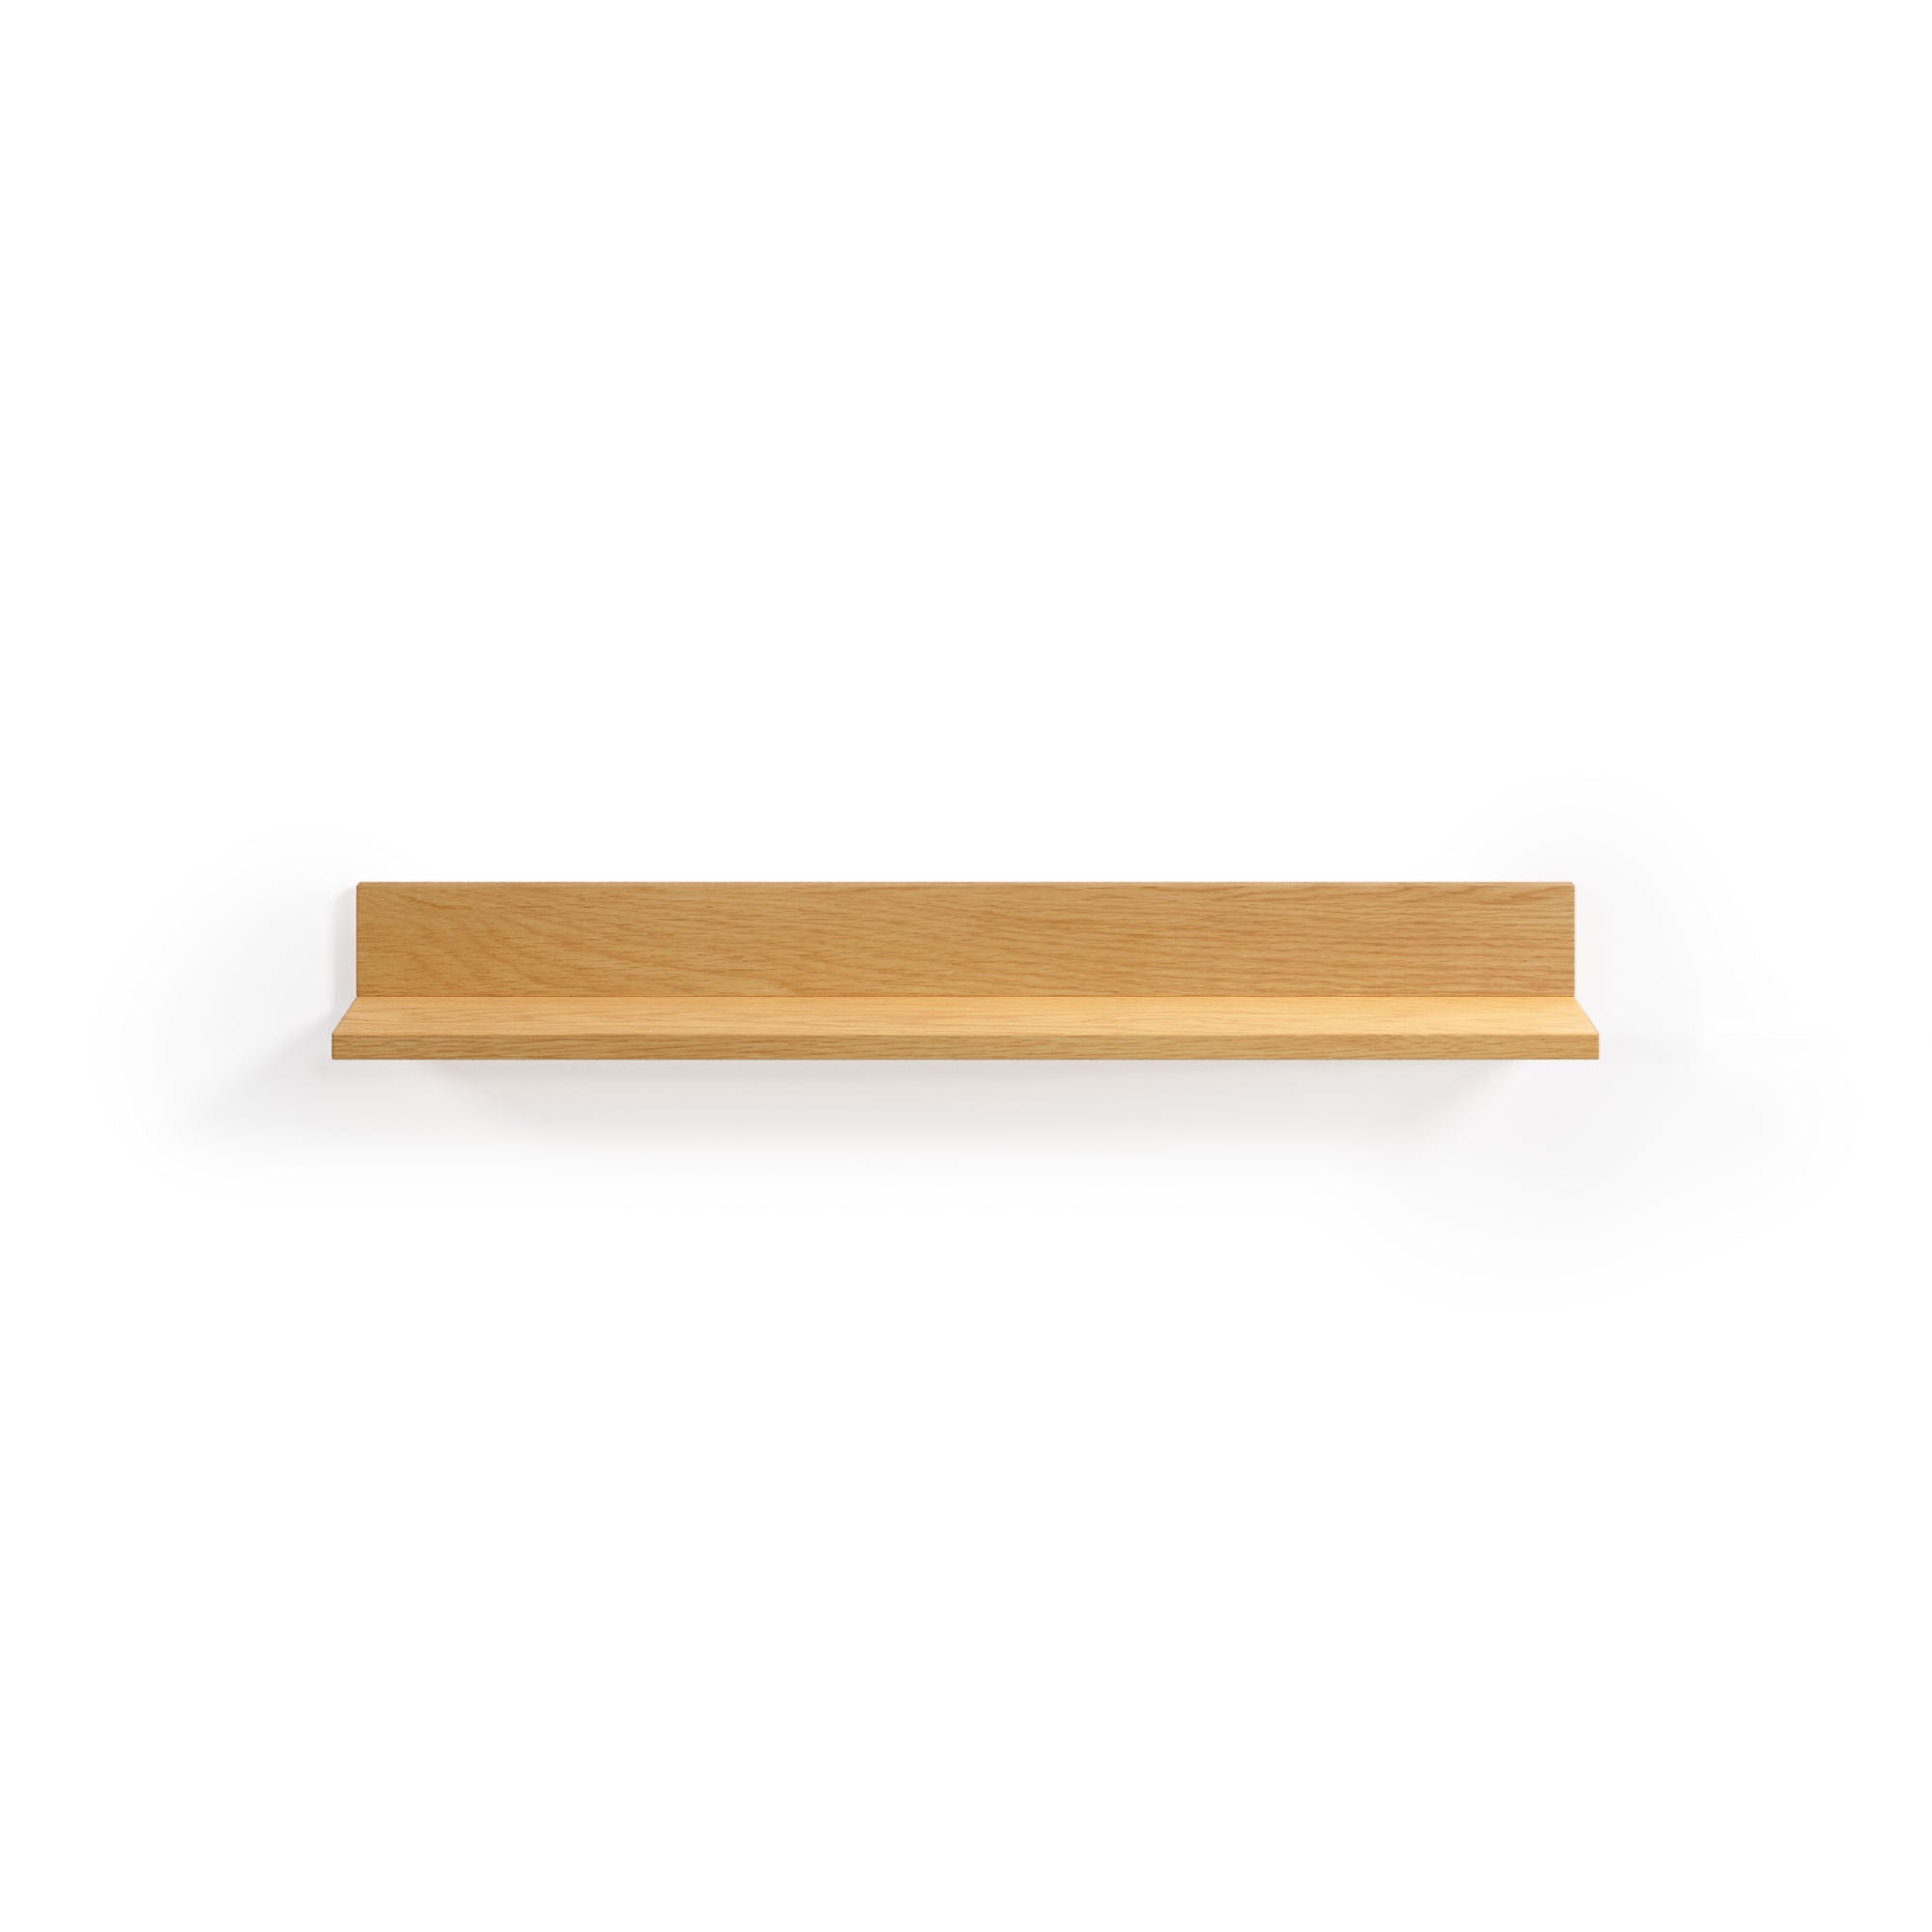 Abilen oak veneer and white lacquer shelf, 80 x 15 cm, FSC™ 100% certified